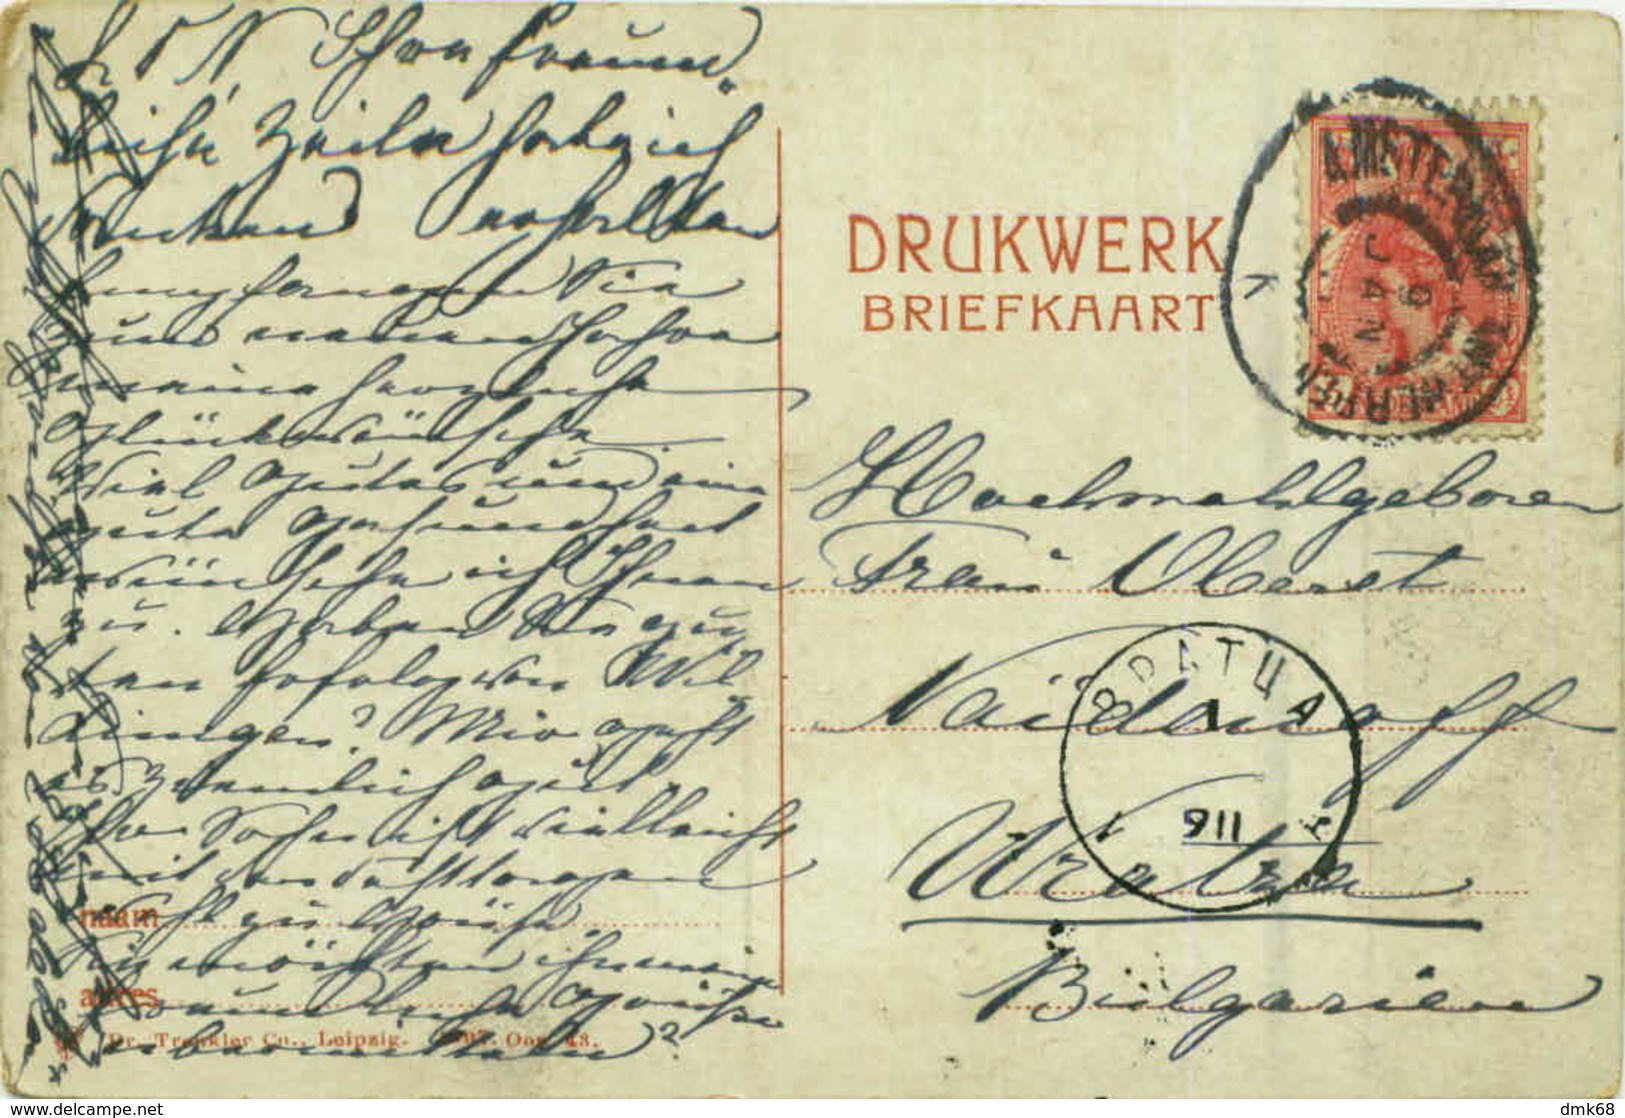 NETHERLANDS - OOSTERBEEK - WATERBOUWING - EDIT DR. TRENKLER CO. - MAILED - 1900s ( BG7708) - Oosterbeek